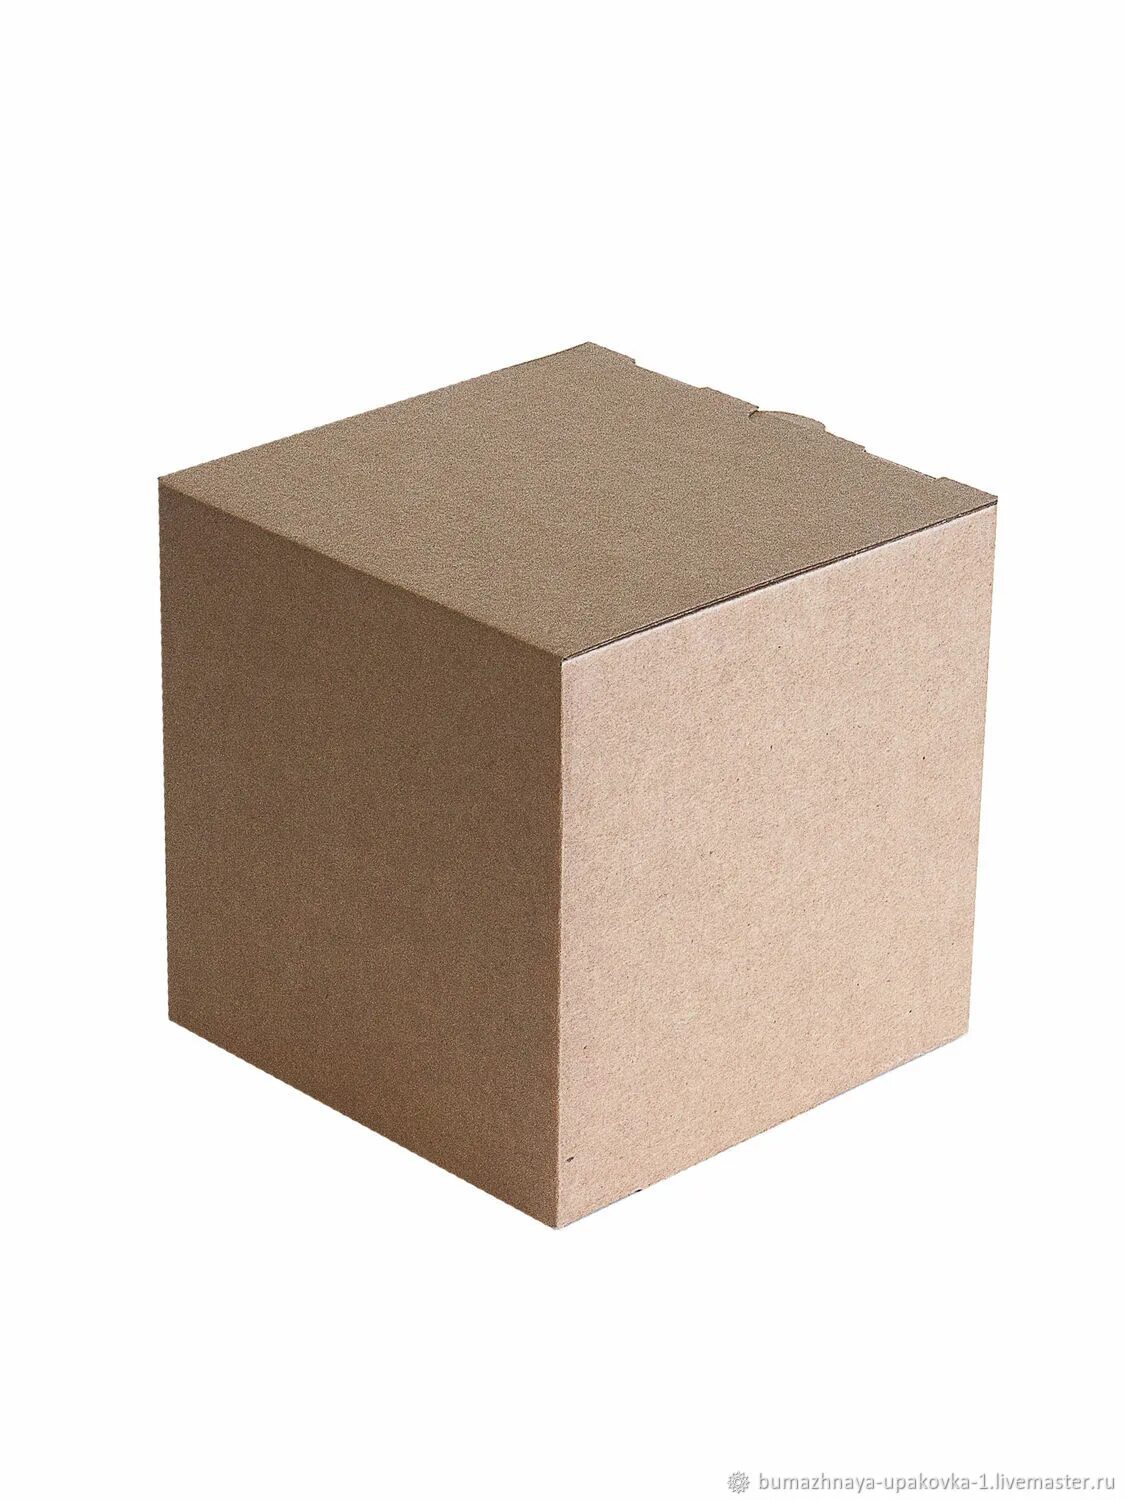 Коробка 20 20 6. Крафт коробка 10х10х10. Коробка куб 10x9. Коробка 10х10 см крафт. Коробка крафт 15х15х8.